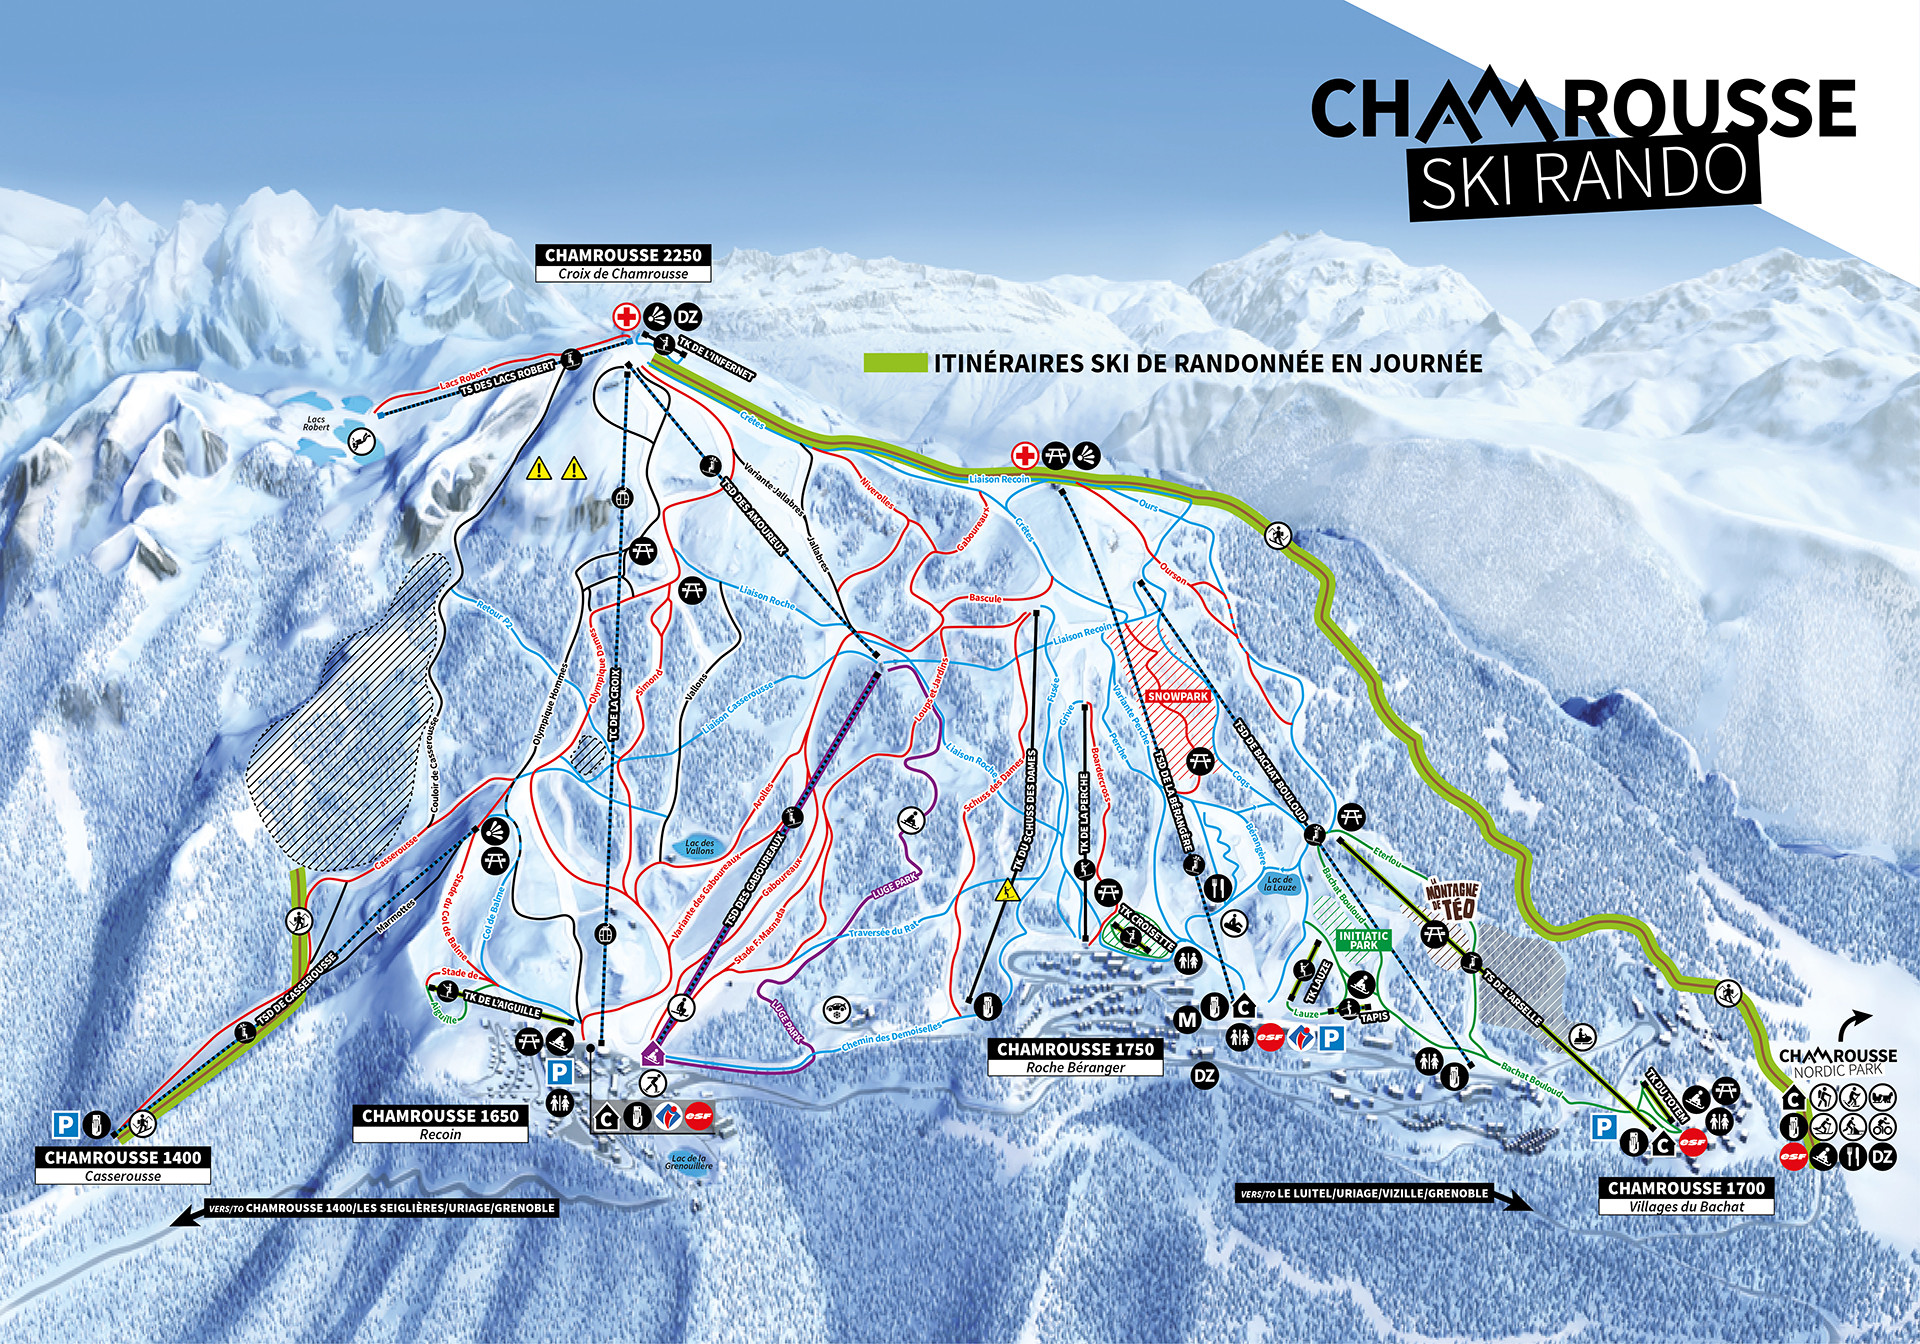 Chamrousse ski touring routes 